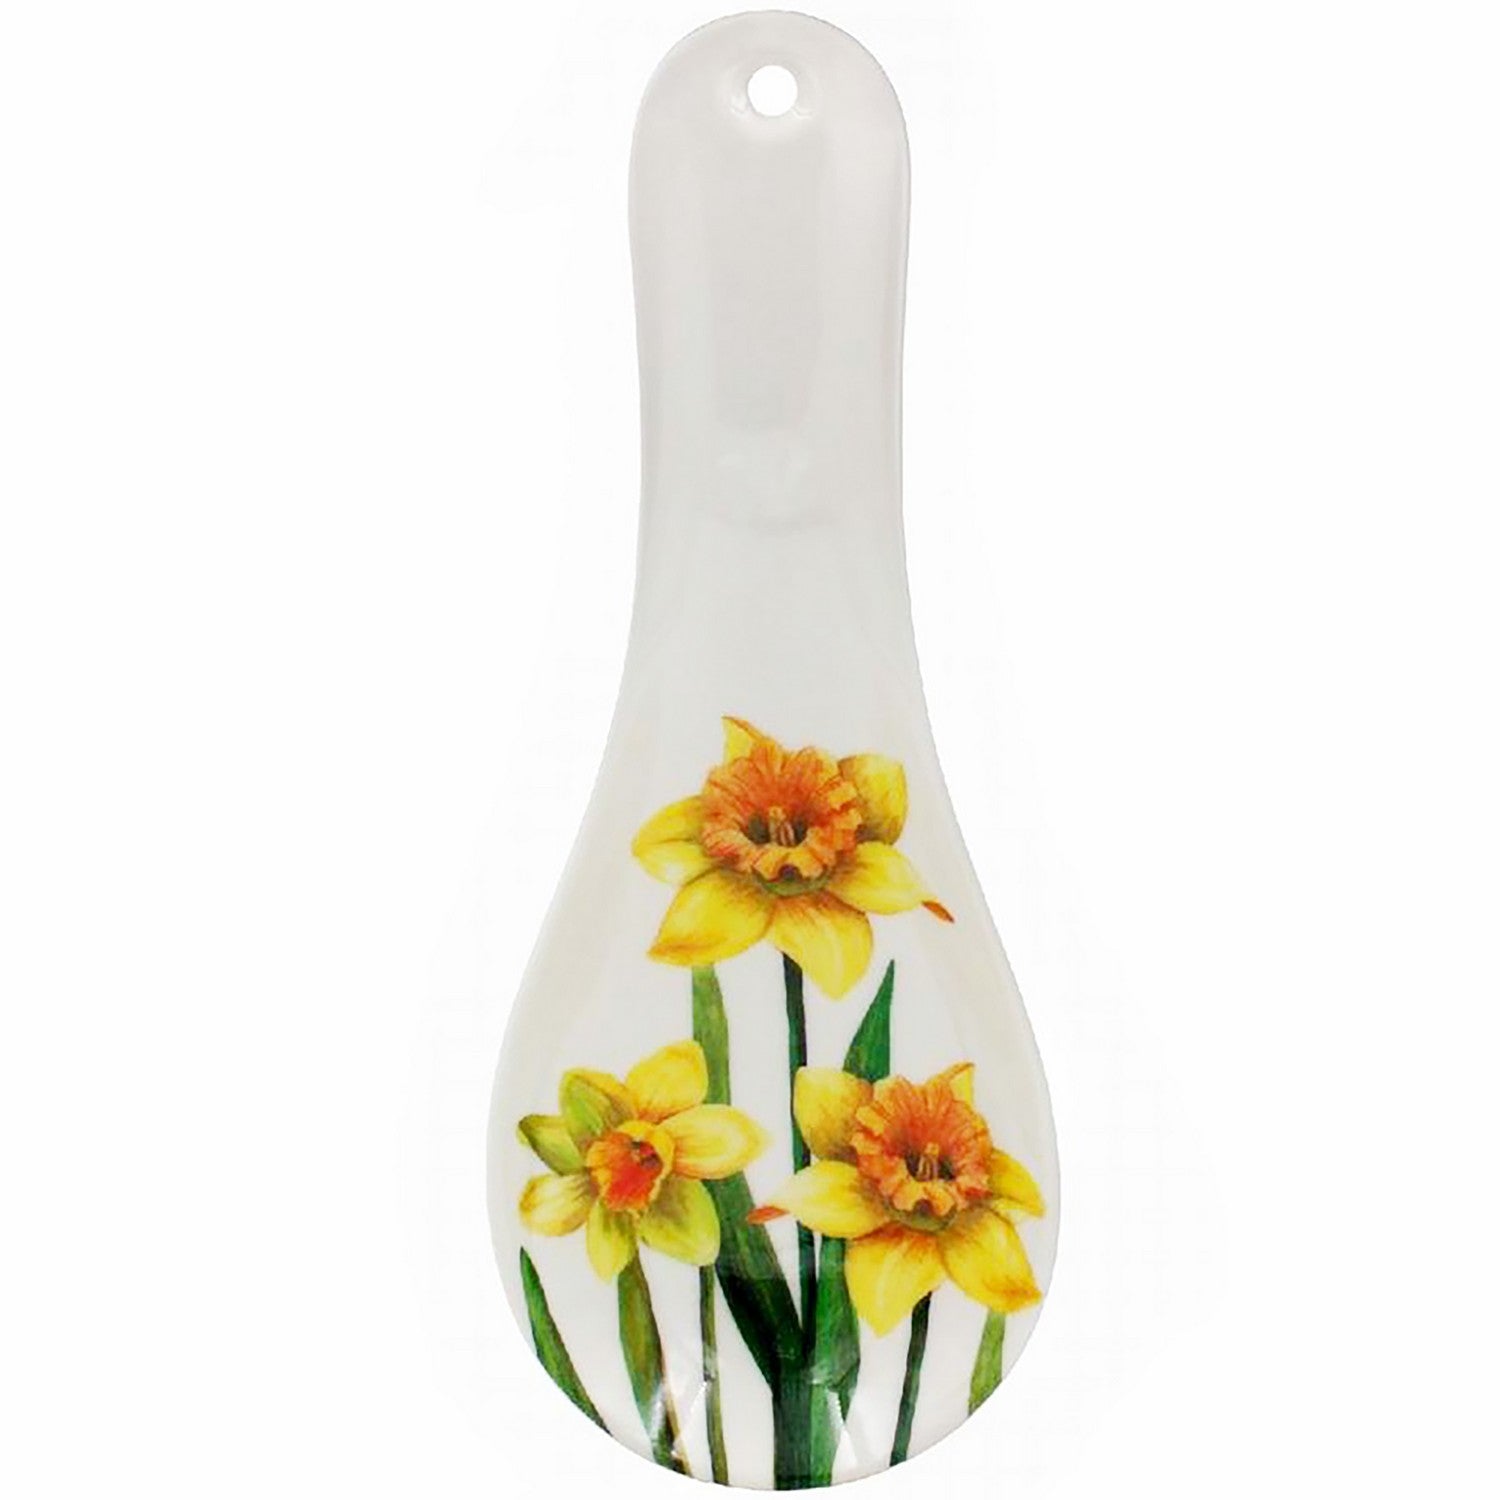 Daffodil Flower Design Spoon Rest